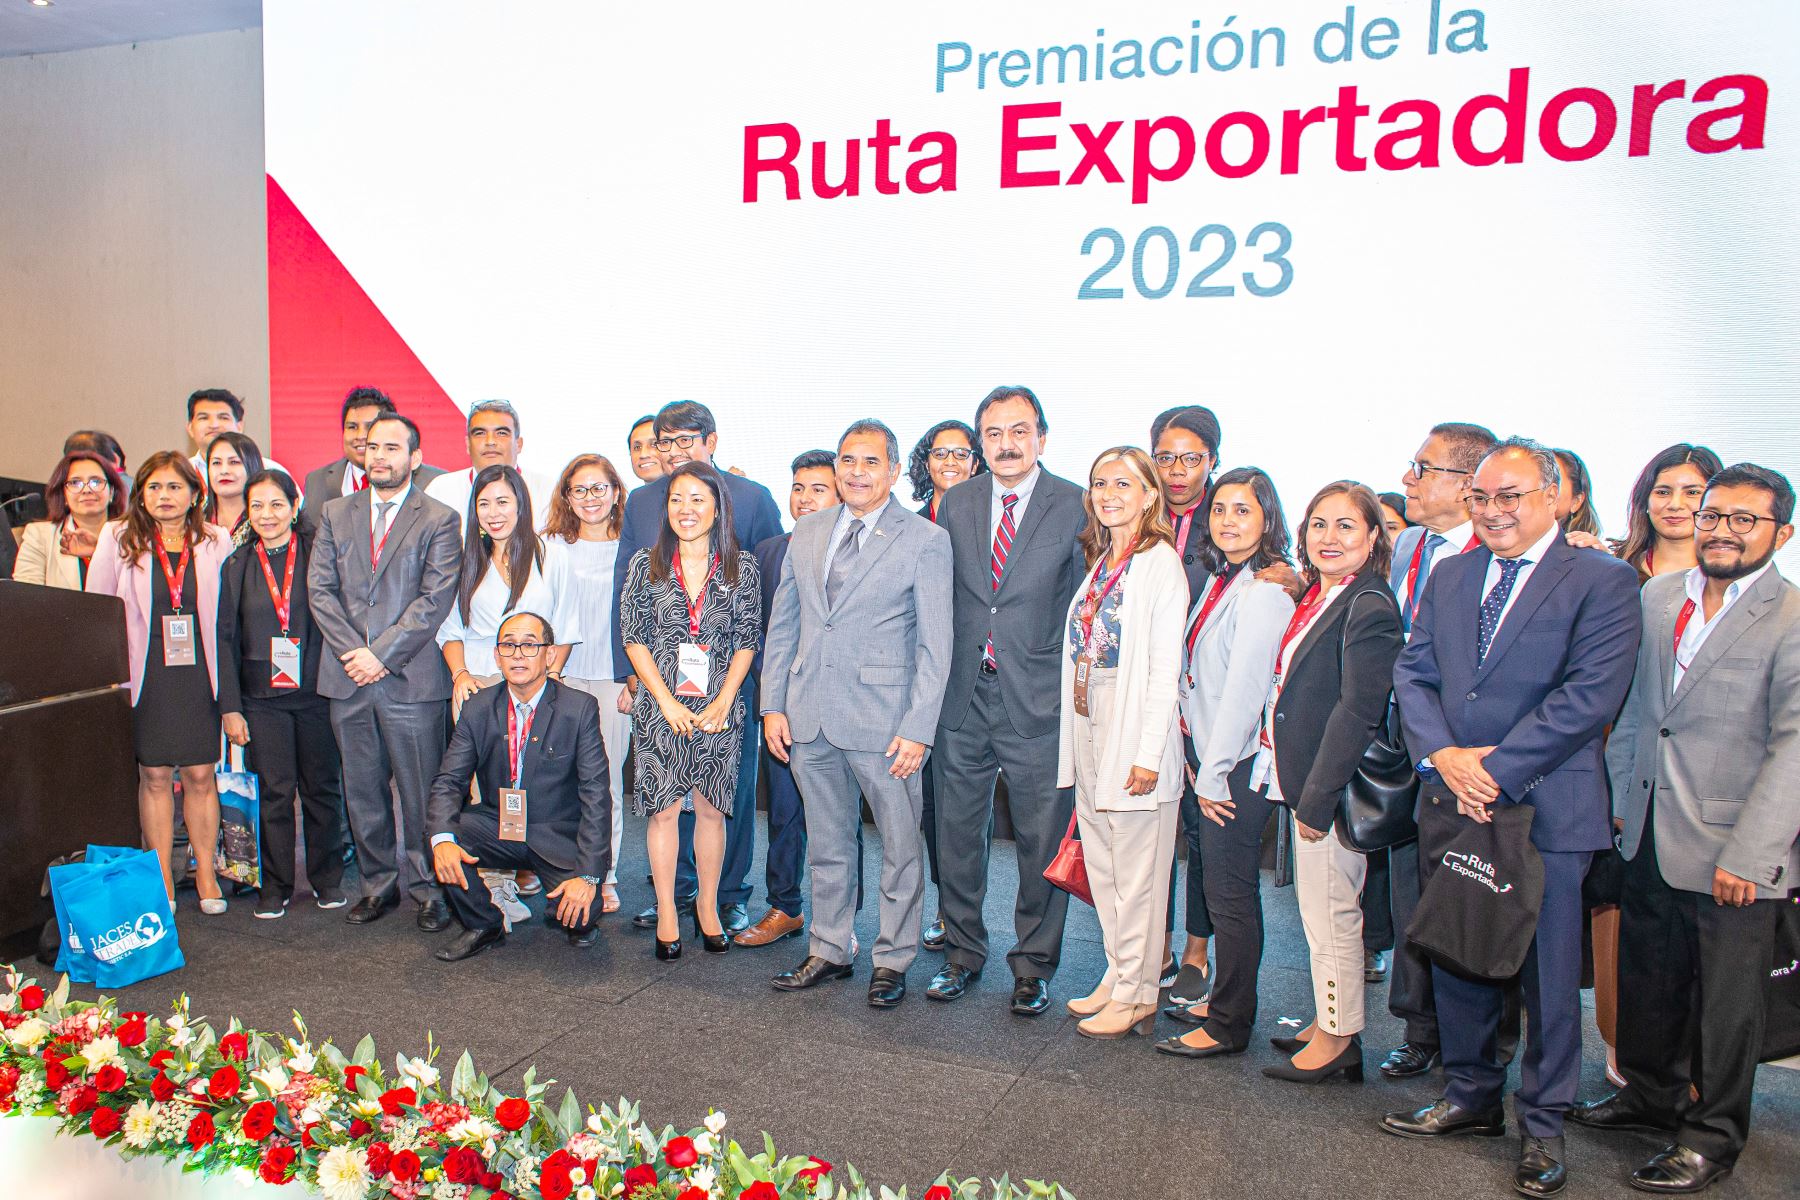 El programa Ruta Exportadora, atendió a casi 23,000 empresas, desde su fundación en el 2012 hasta la fecha.